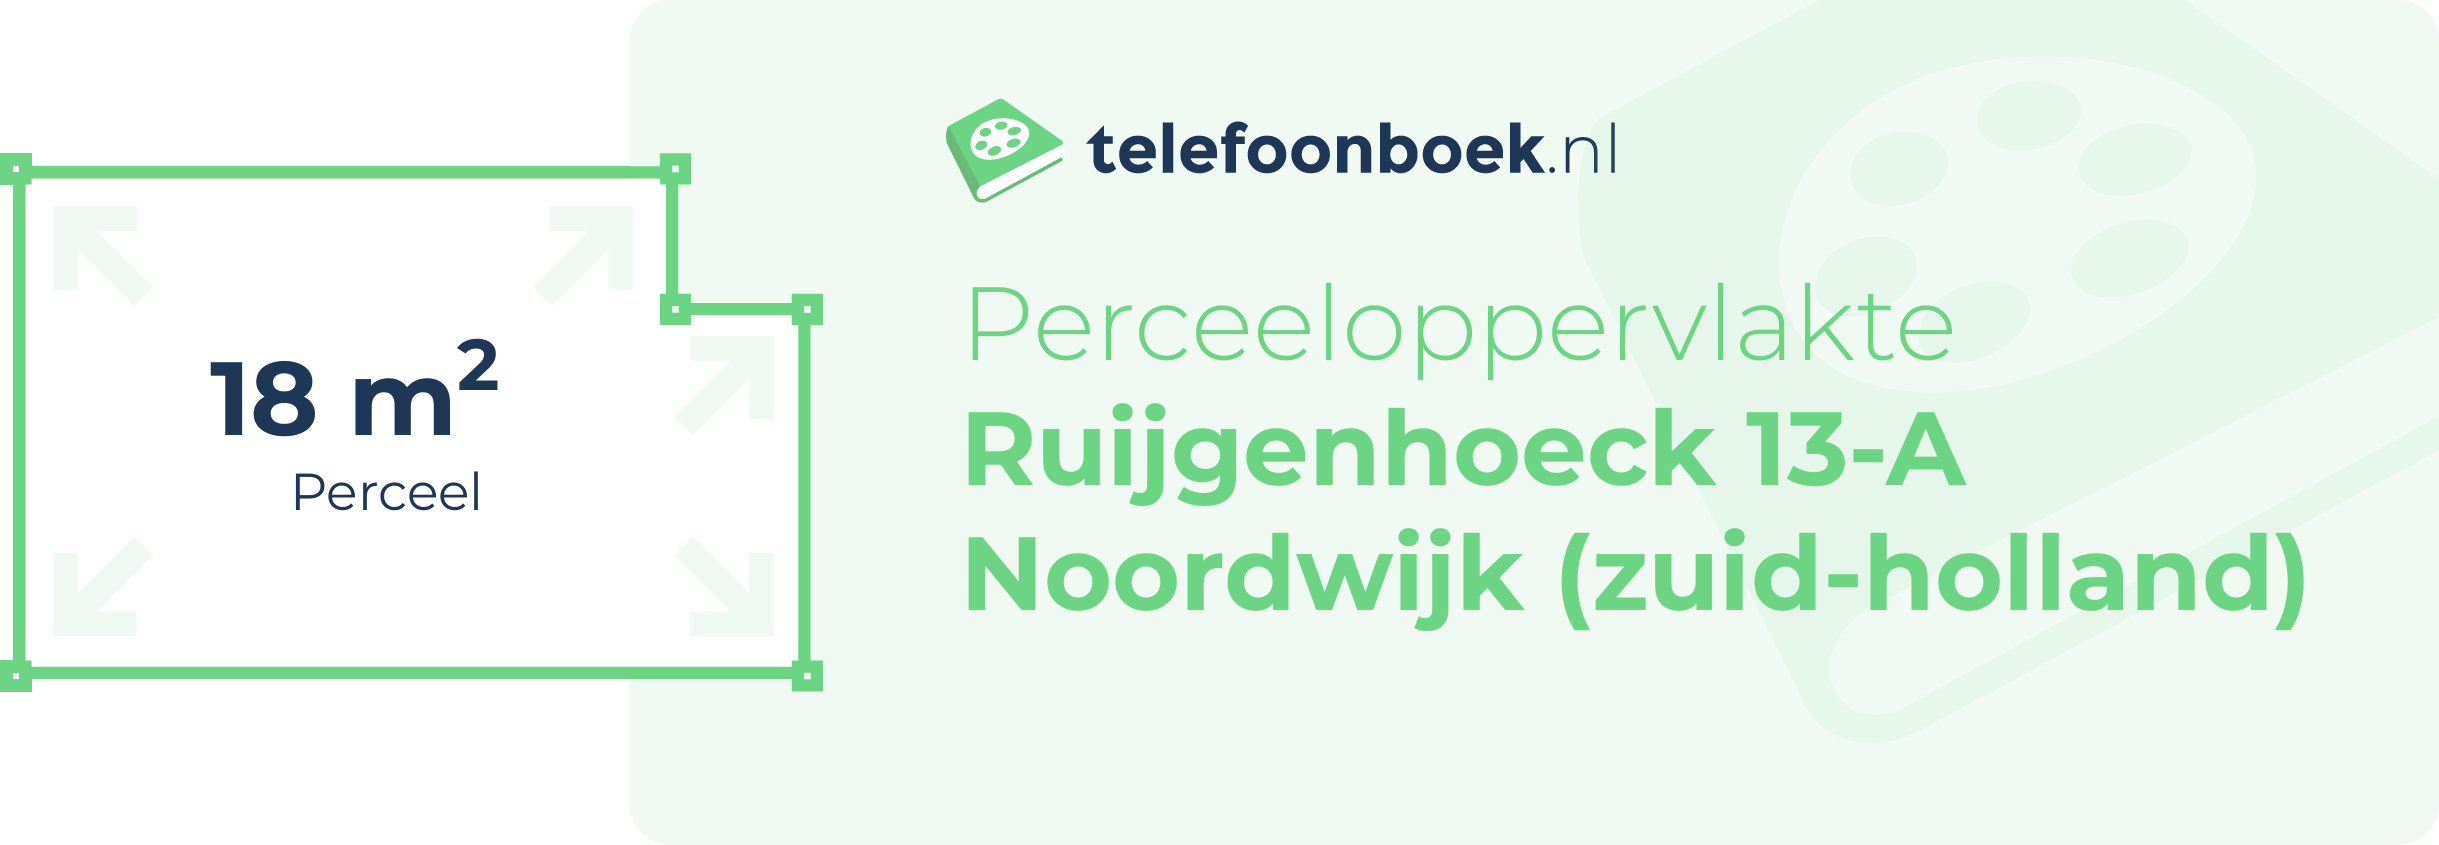 Perceeloppervlakte Ruijgenhoeck 13-A Noordwijk (Zuid-Holland)